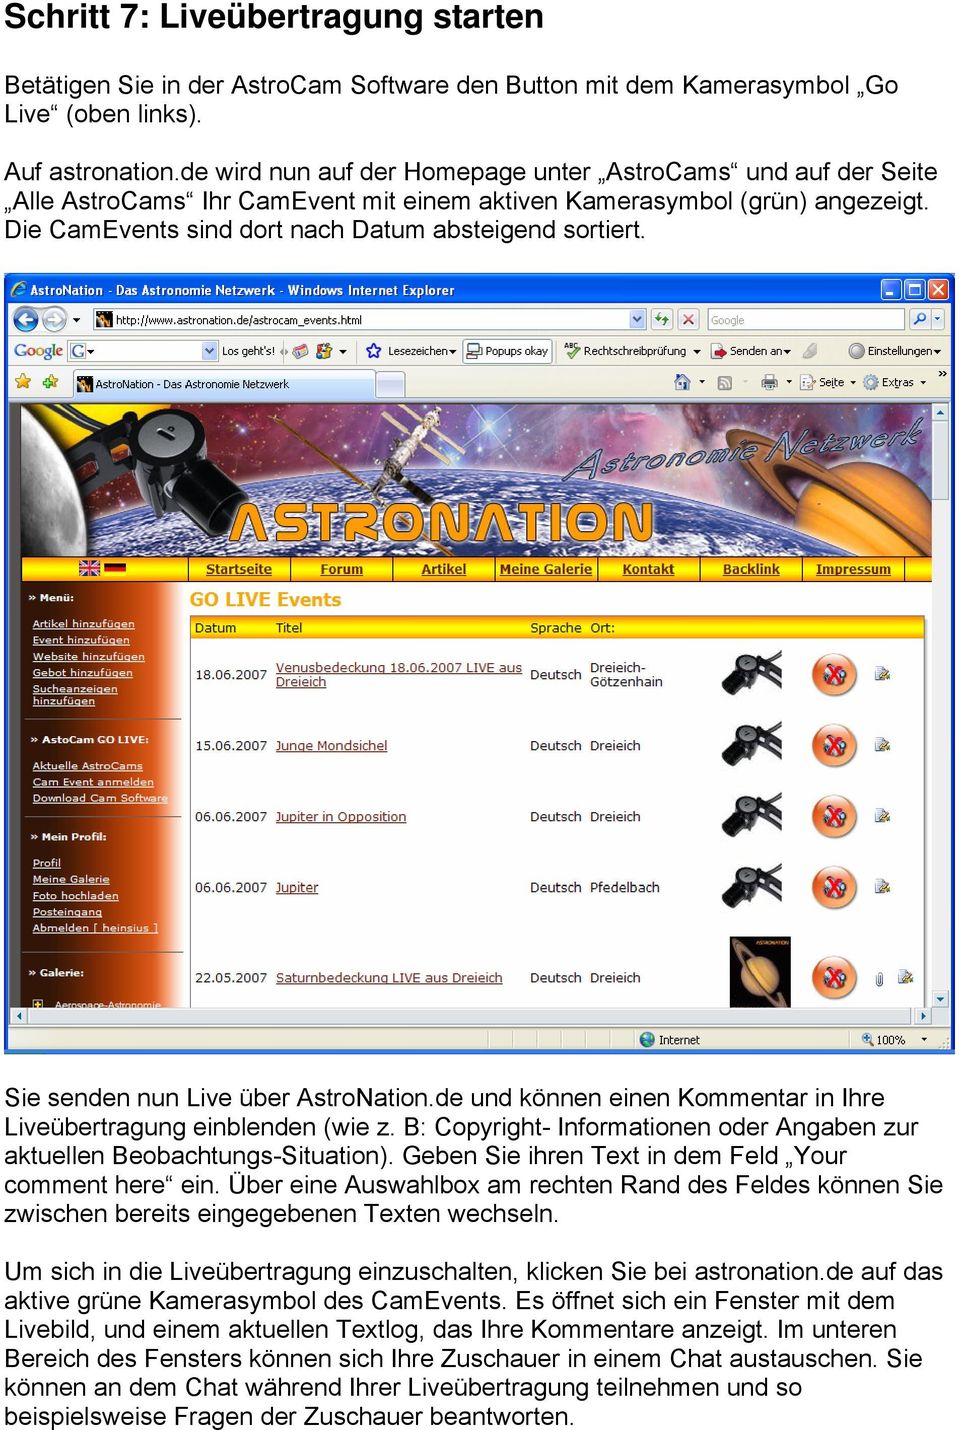 Sie senden nun Live über AstroNation.de und können einen Kommentar in Ihre Liveübertragung einblenden (wie z. B: Copyright- Informationen oder Angaben zur aktuellen Beobachtungs-Situation).